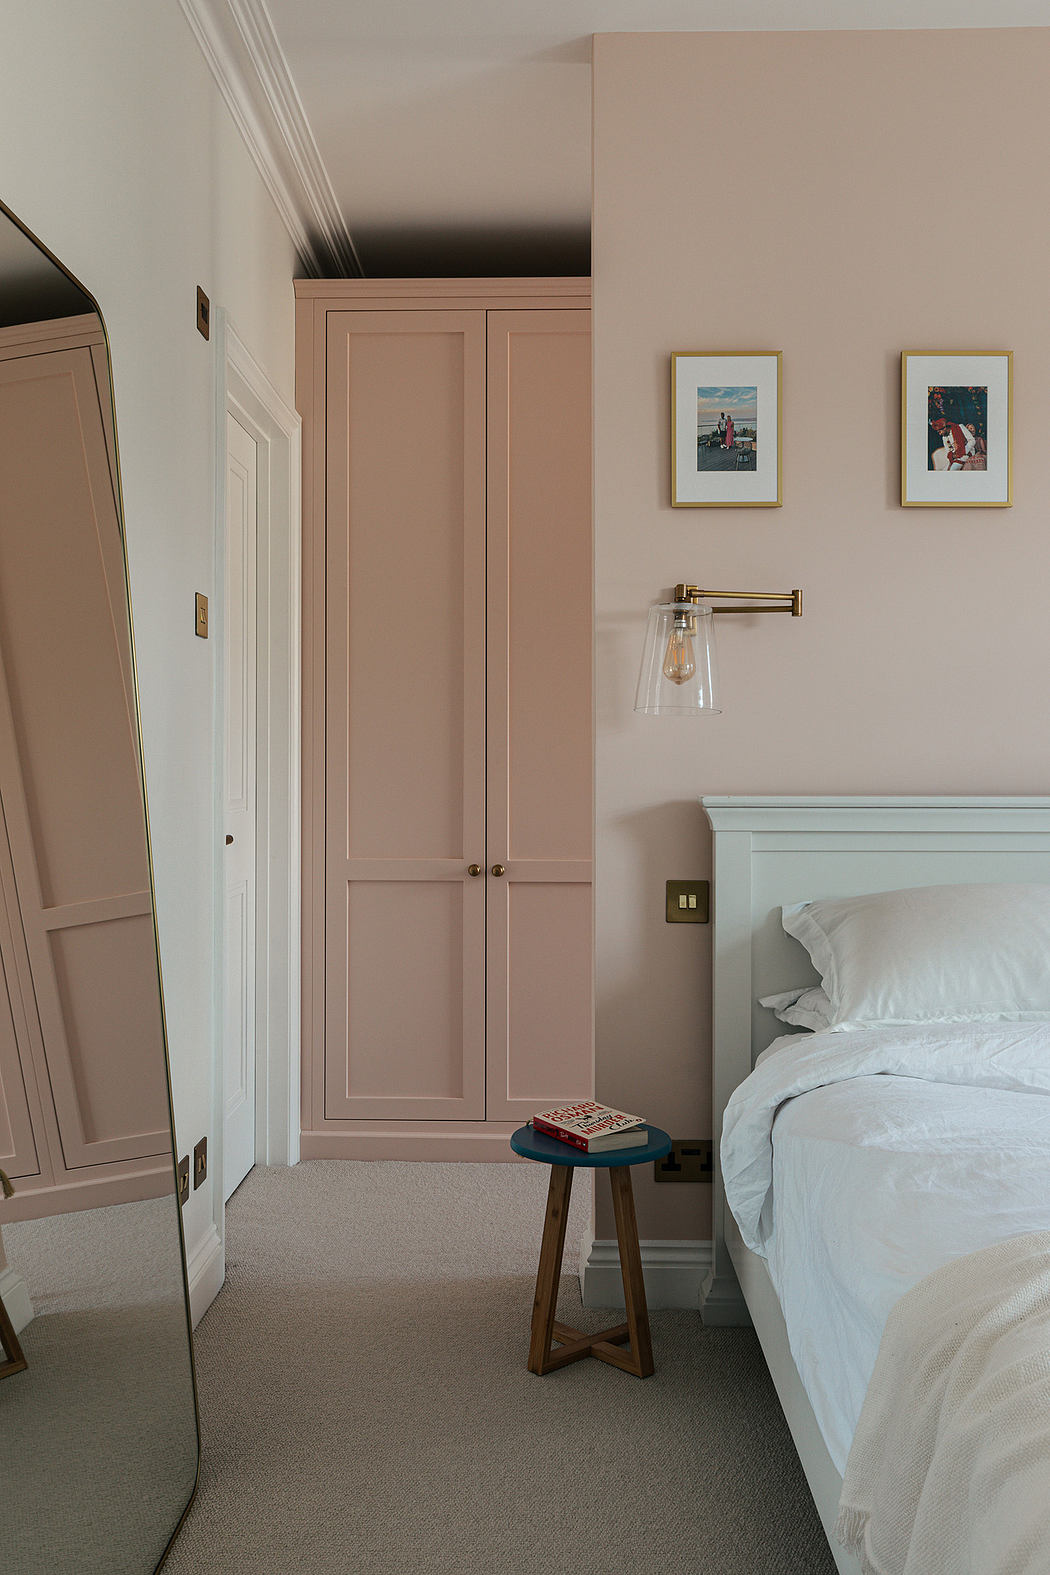 Elegant pink bedroom interior with classic wooden door and wall art.